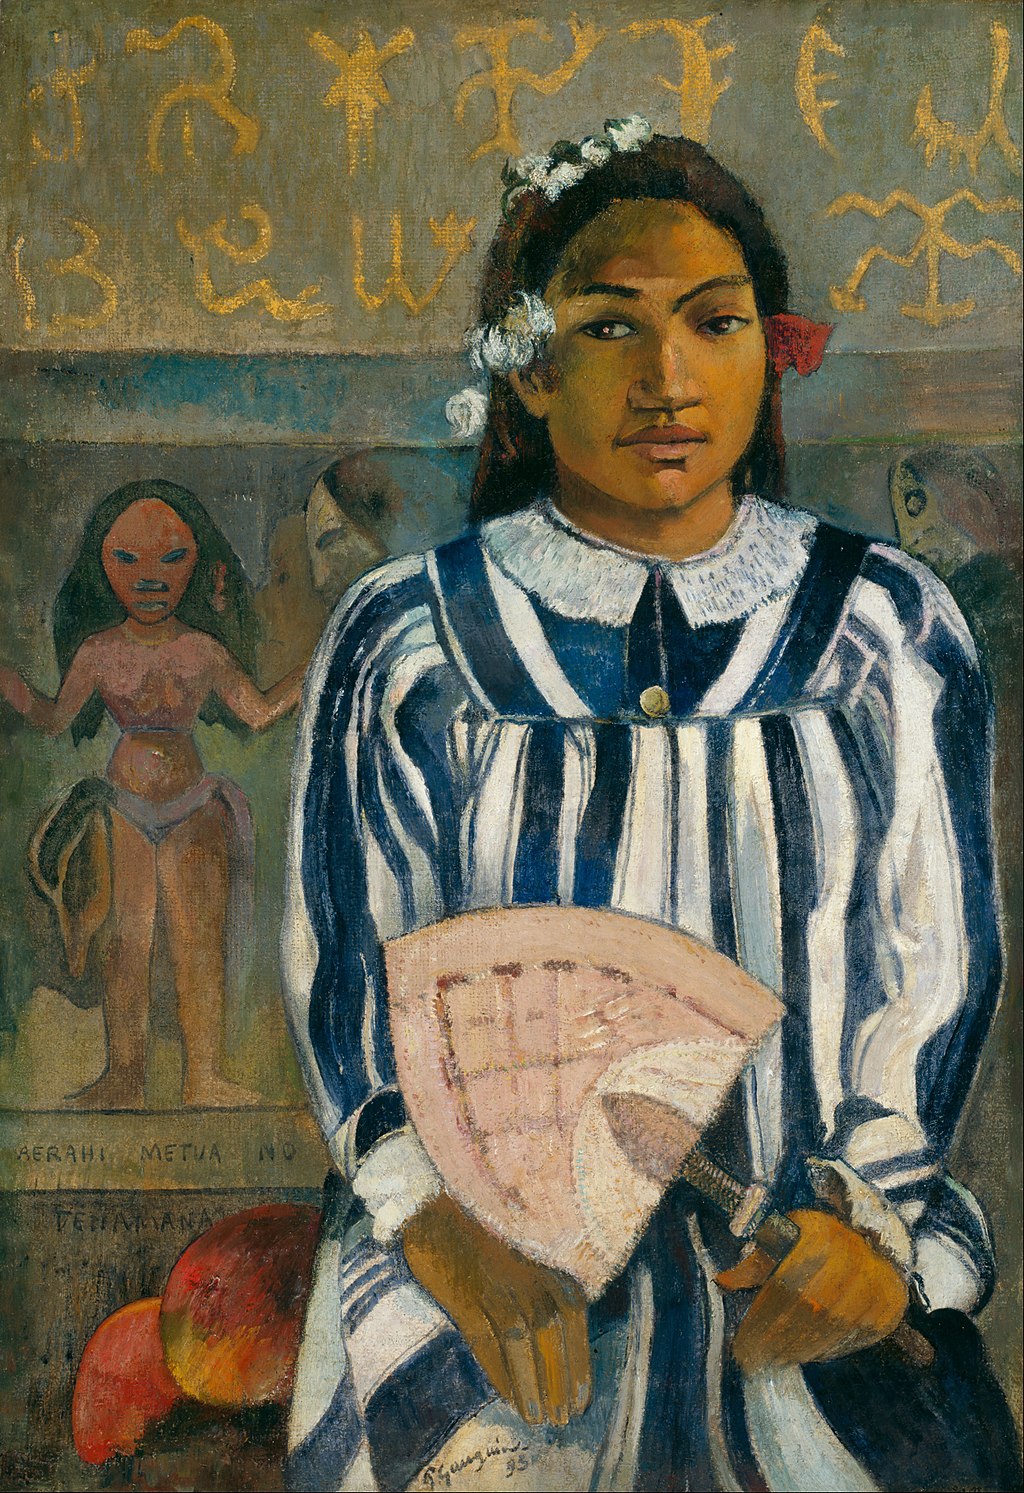 Merahi Metua no Tehamana in Detail Paul Gauguin